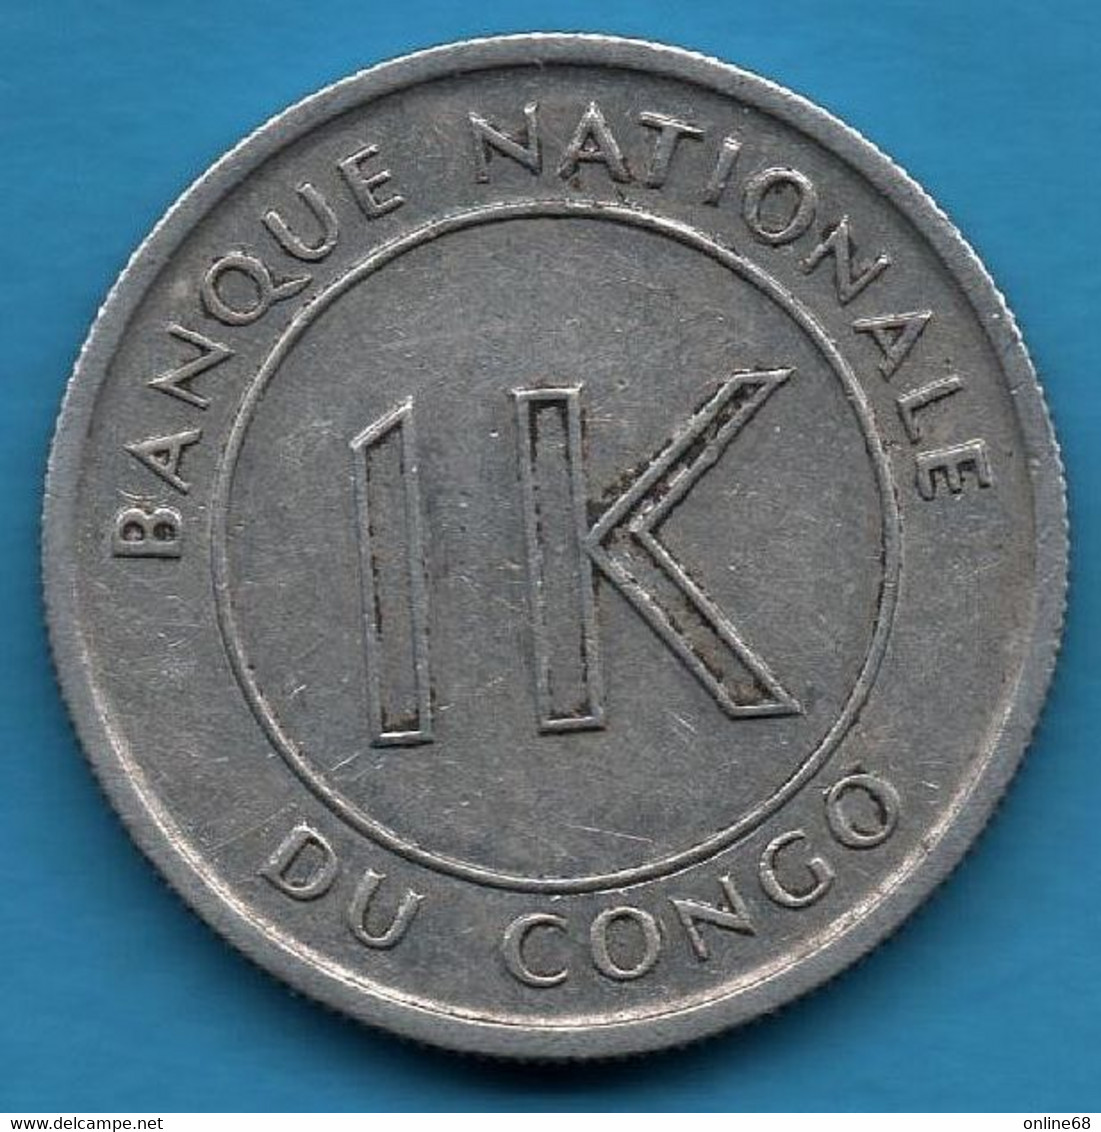 CONGO 1 LIKUTA 1967 KM# 8 - Congo (Democratic Republic 1964-70)